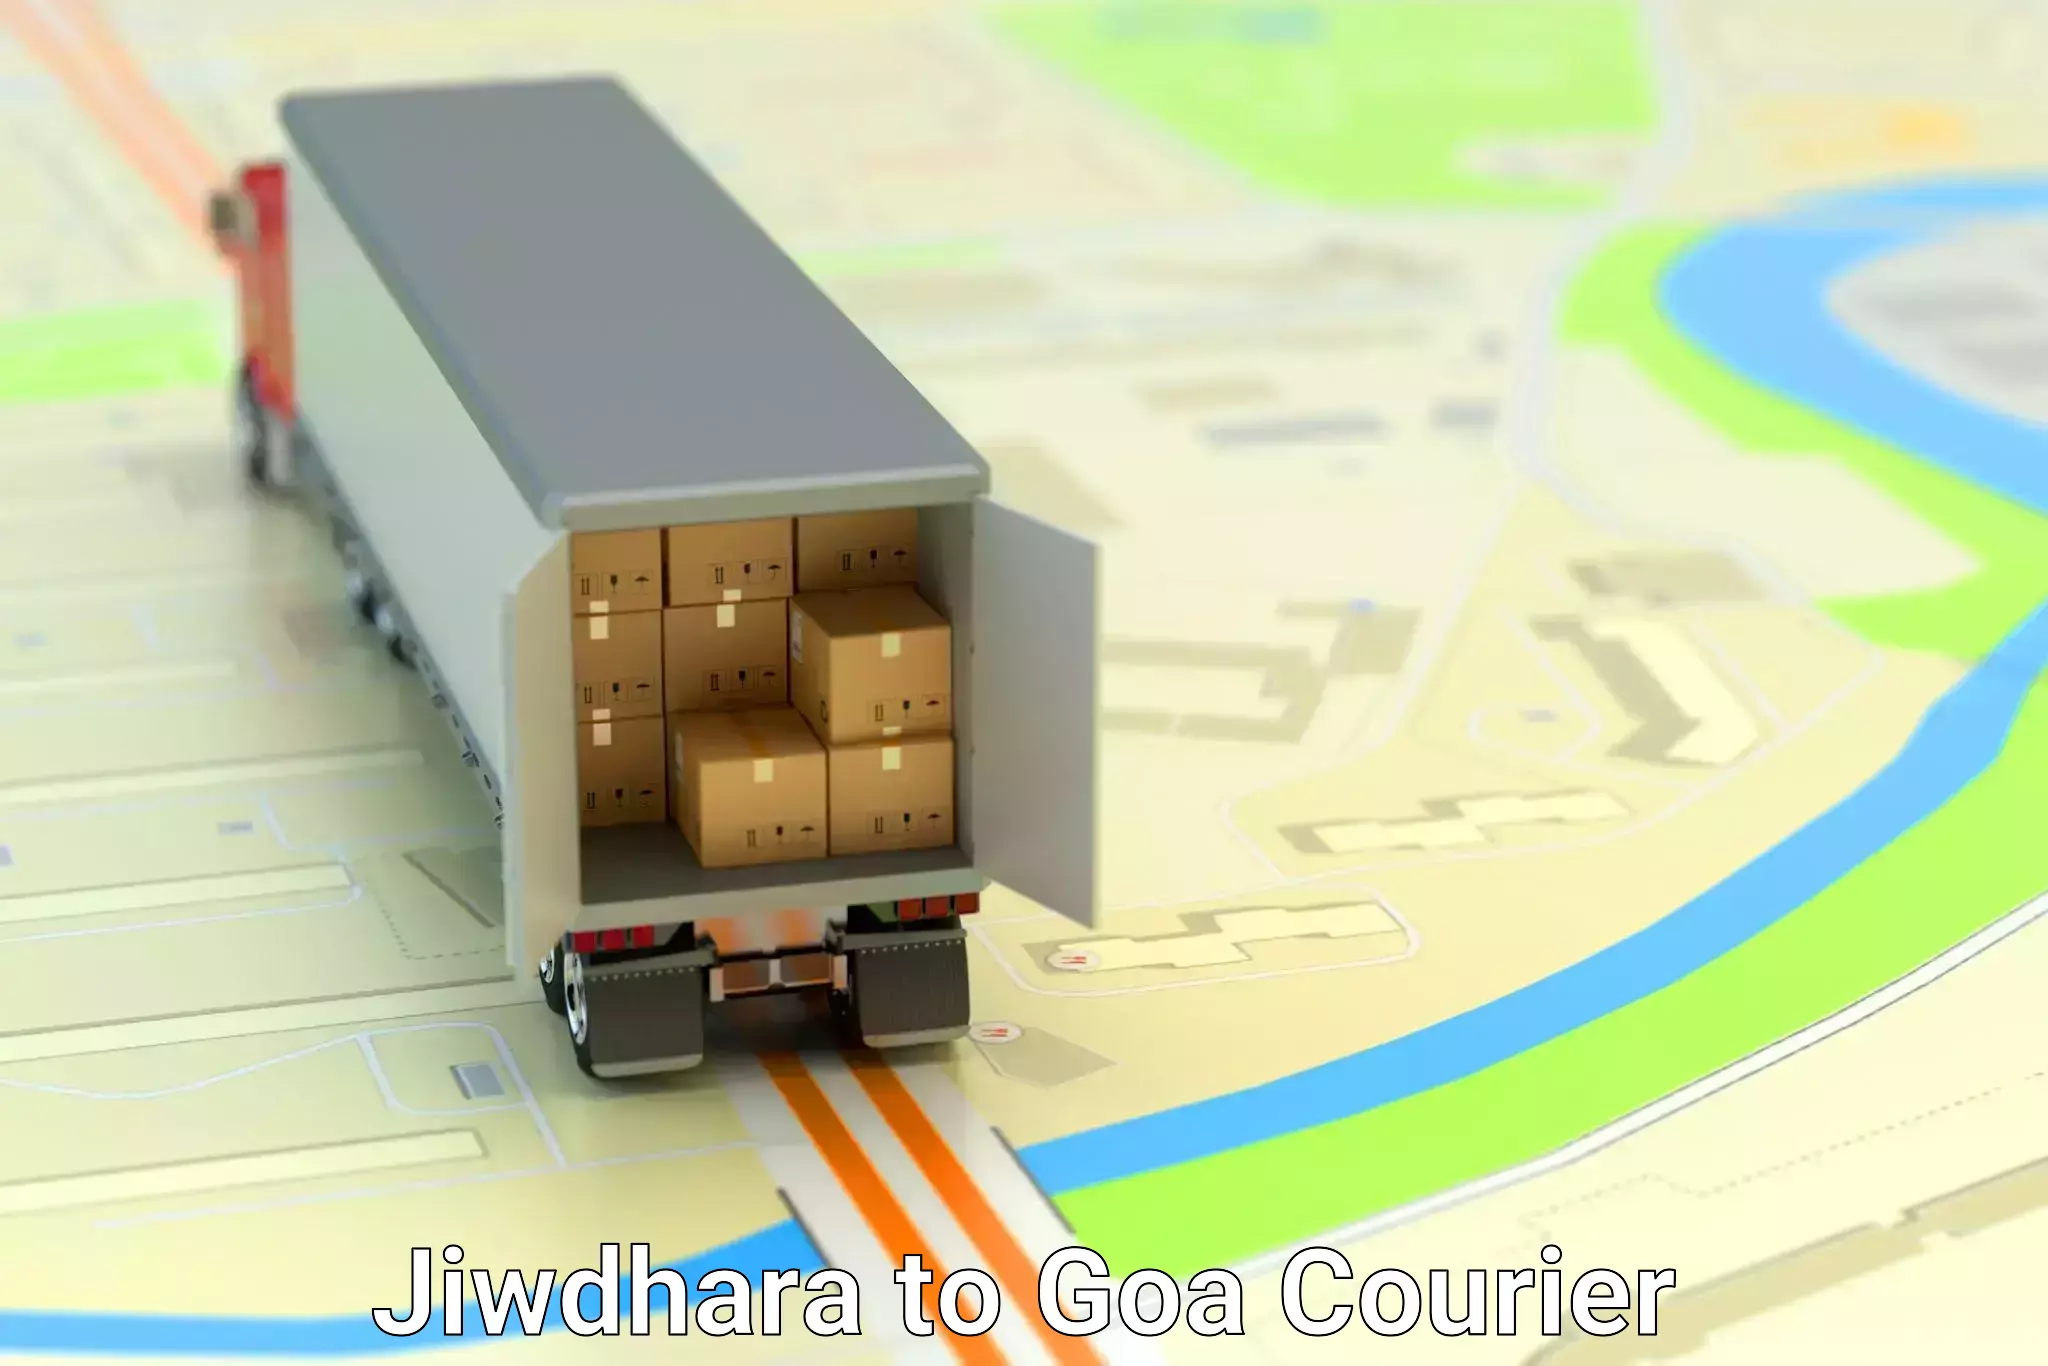 Furniture transport service Jiwdhara to Margao